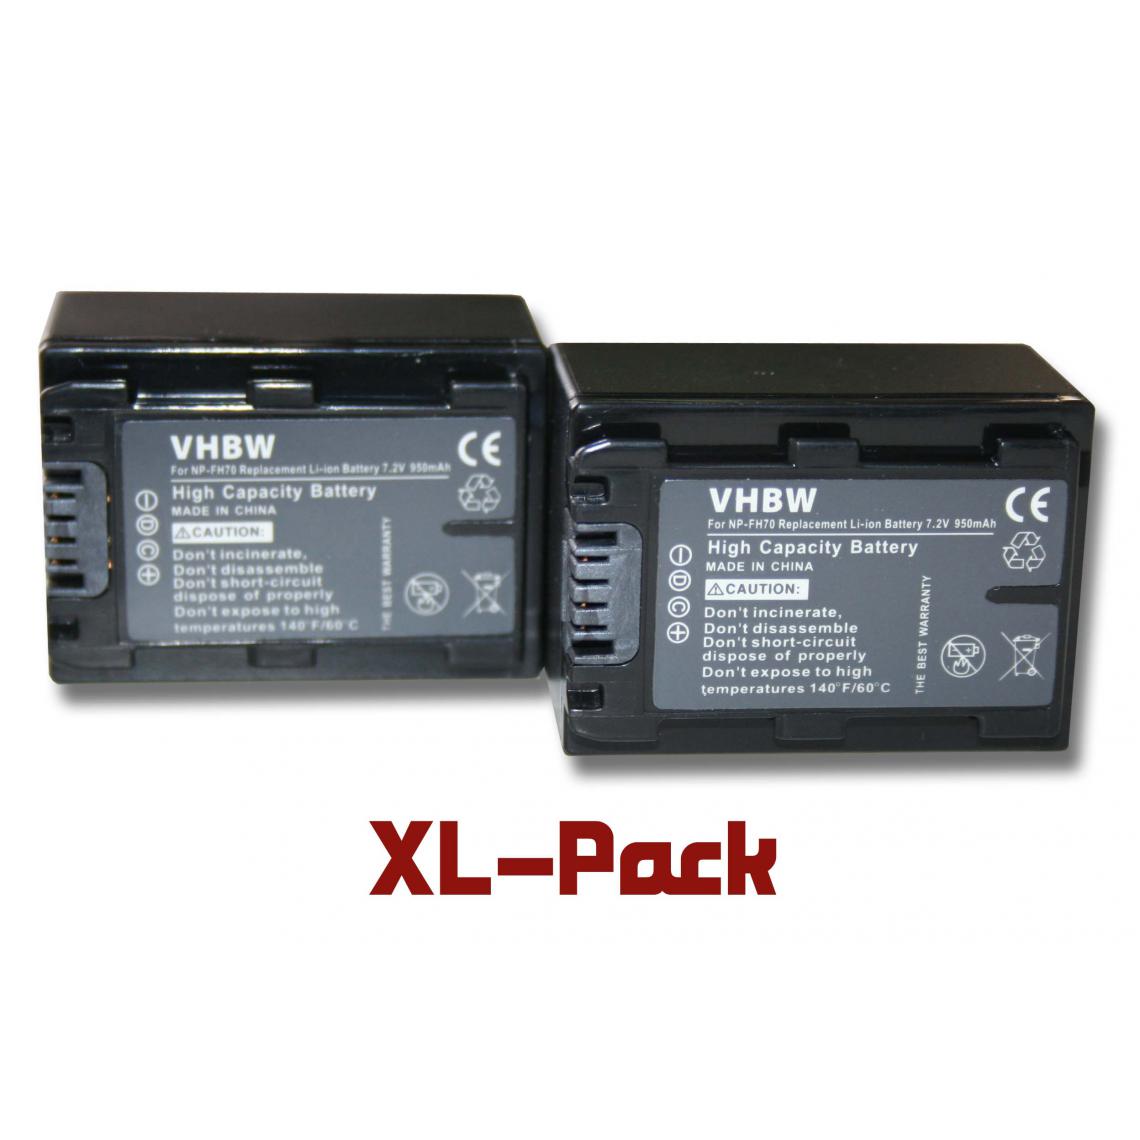 Vhbw - vhbw 2x batterie compatible avec Sony HDR-CX520, HDR-CX520VE, HDR-CX6(EK), HDR-HC5(E) caméra vidéo (950mAh, 7,2V, Li-ion) avec puce d'information - Batterie Photo & Video